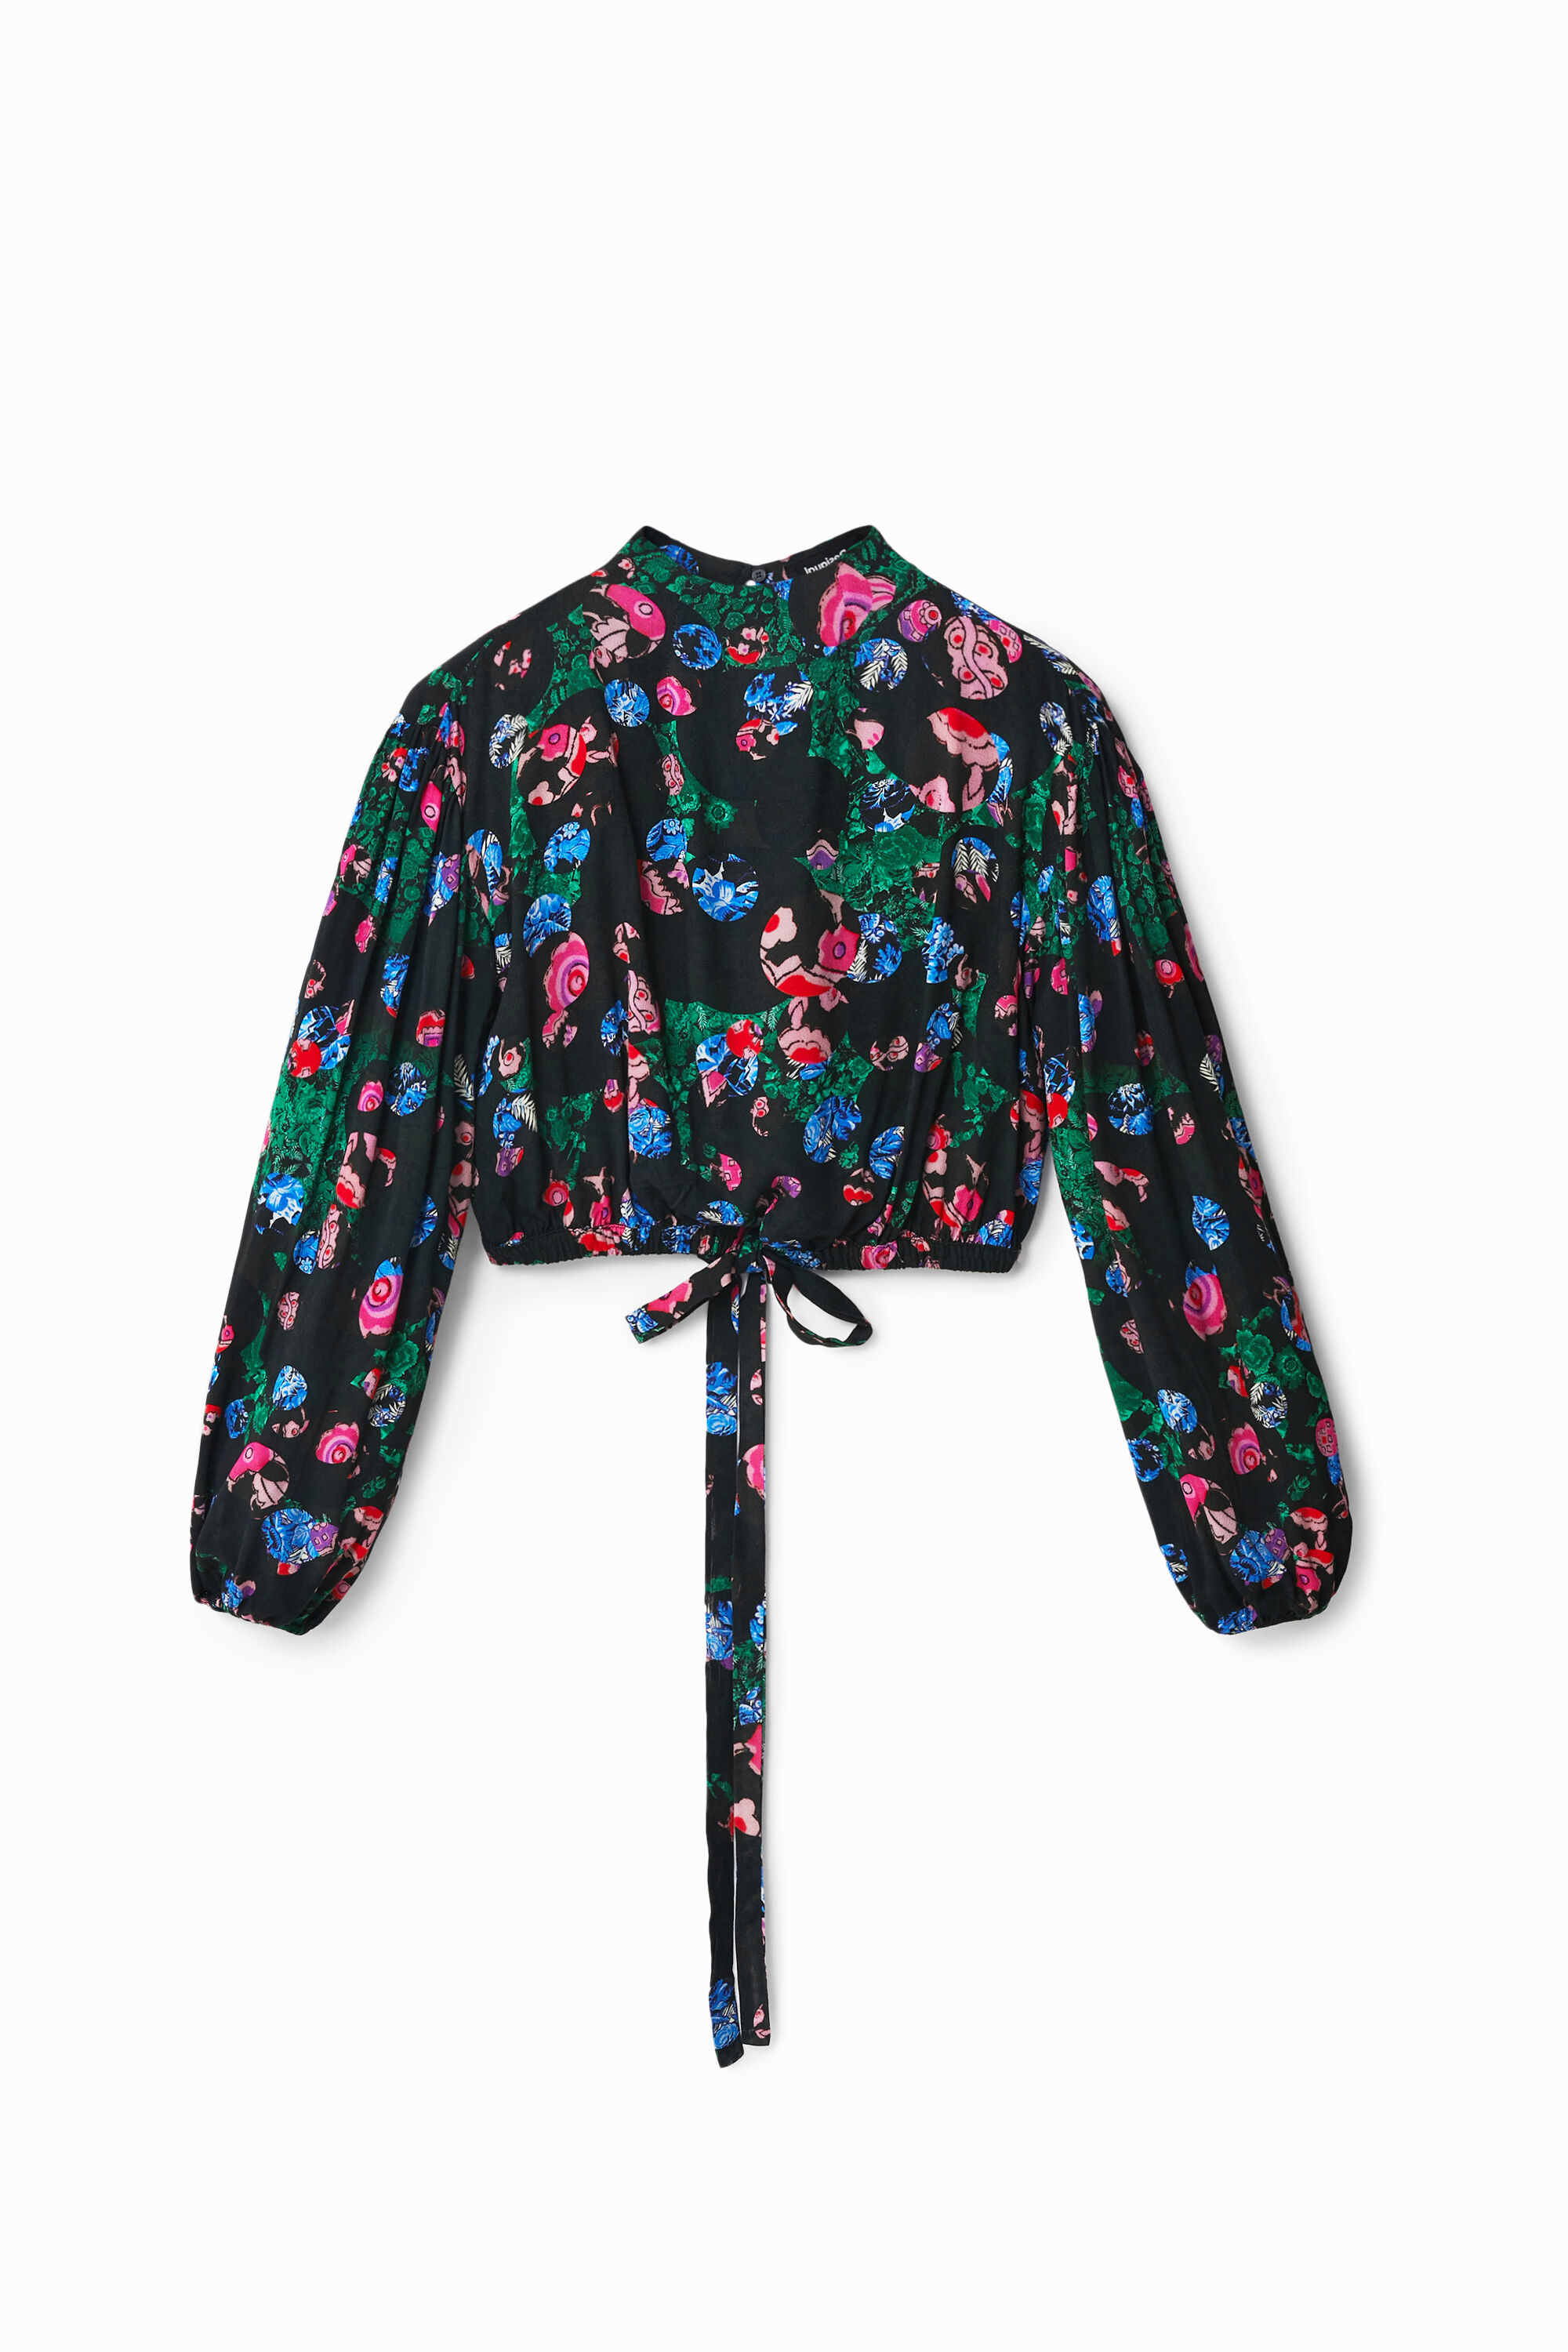 M. Christian Lacroix cropped floral blouse - BLACK - L